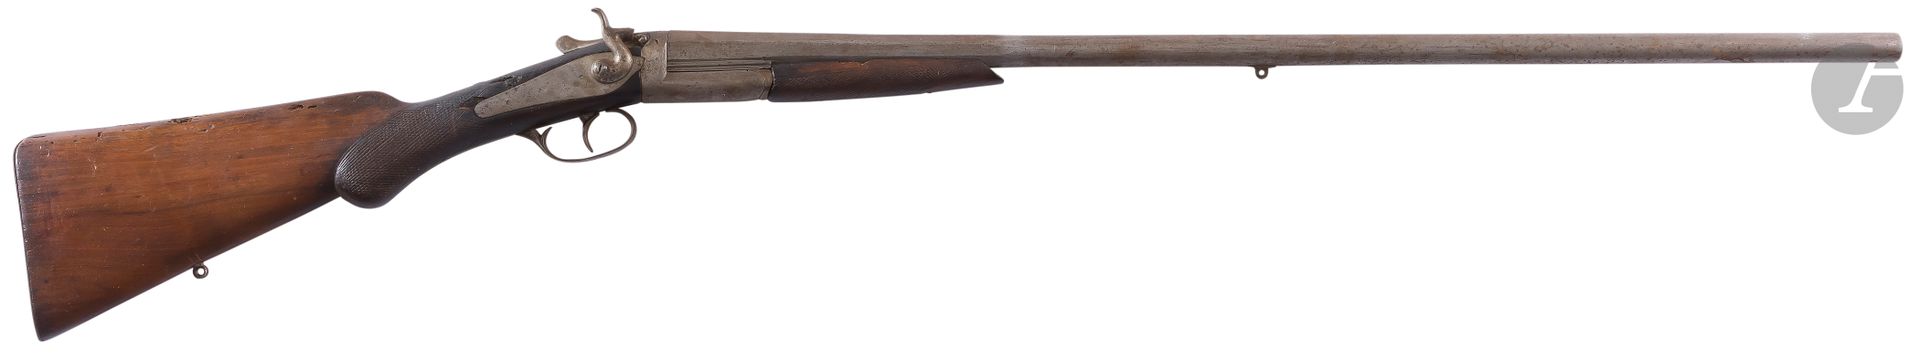 Null 中心火力猎枪，外置枪锤，单发，16口径。
原样（事故）。约1900年。